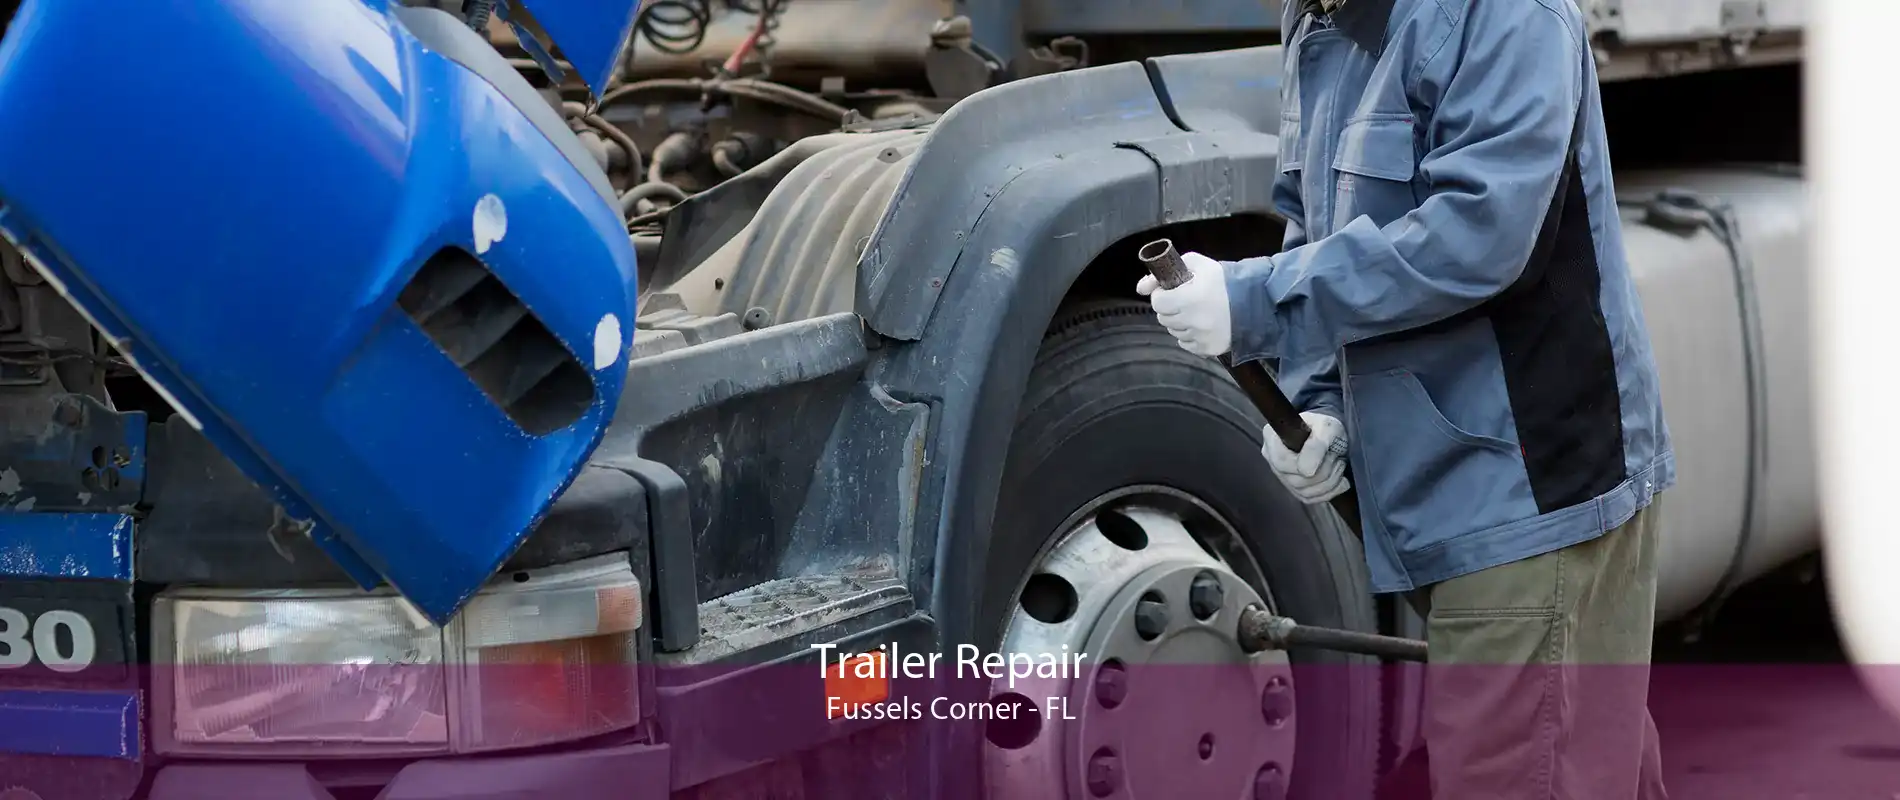 Trailer Repair Fussels Corner - FL